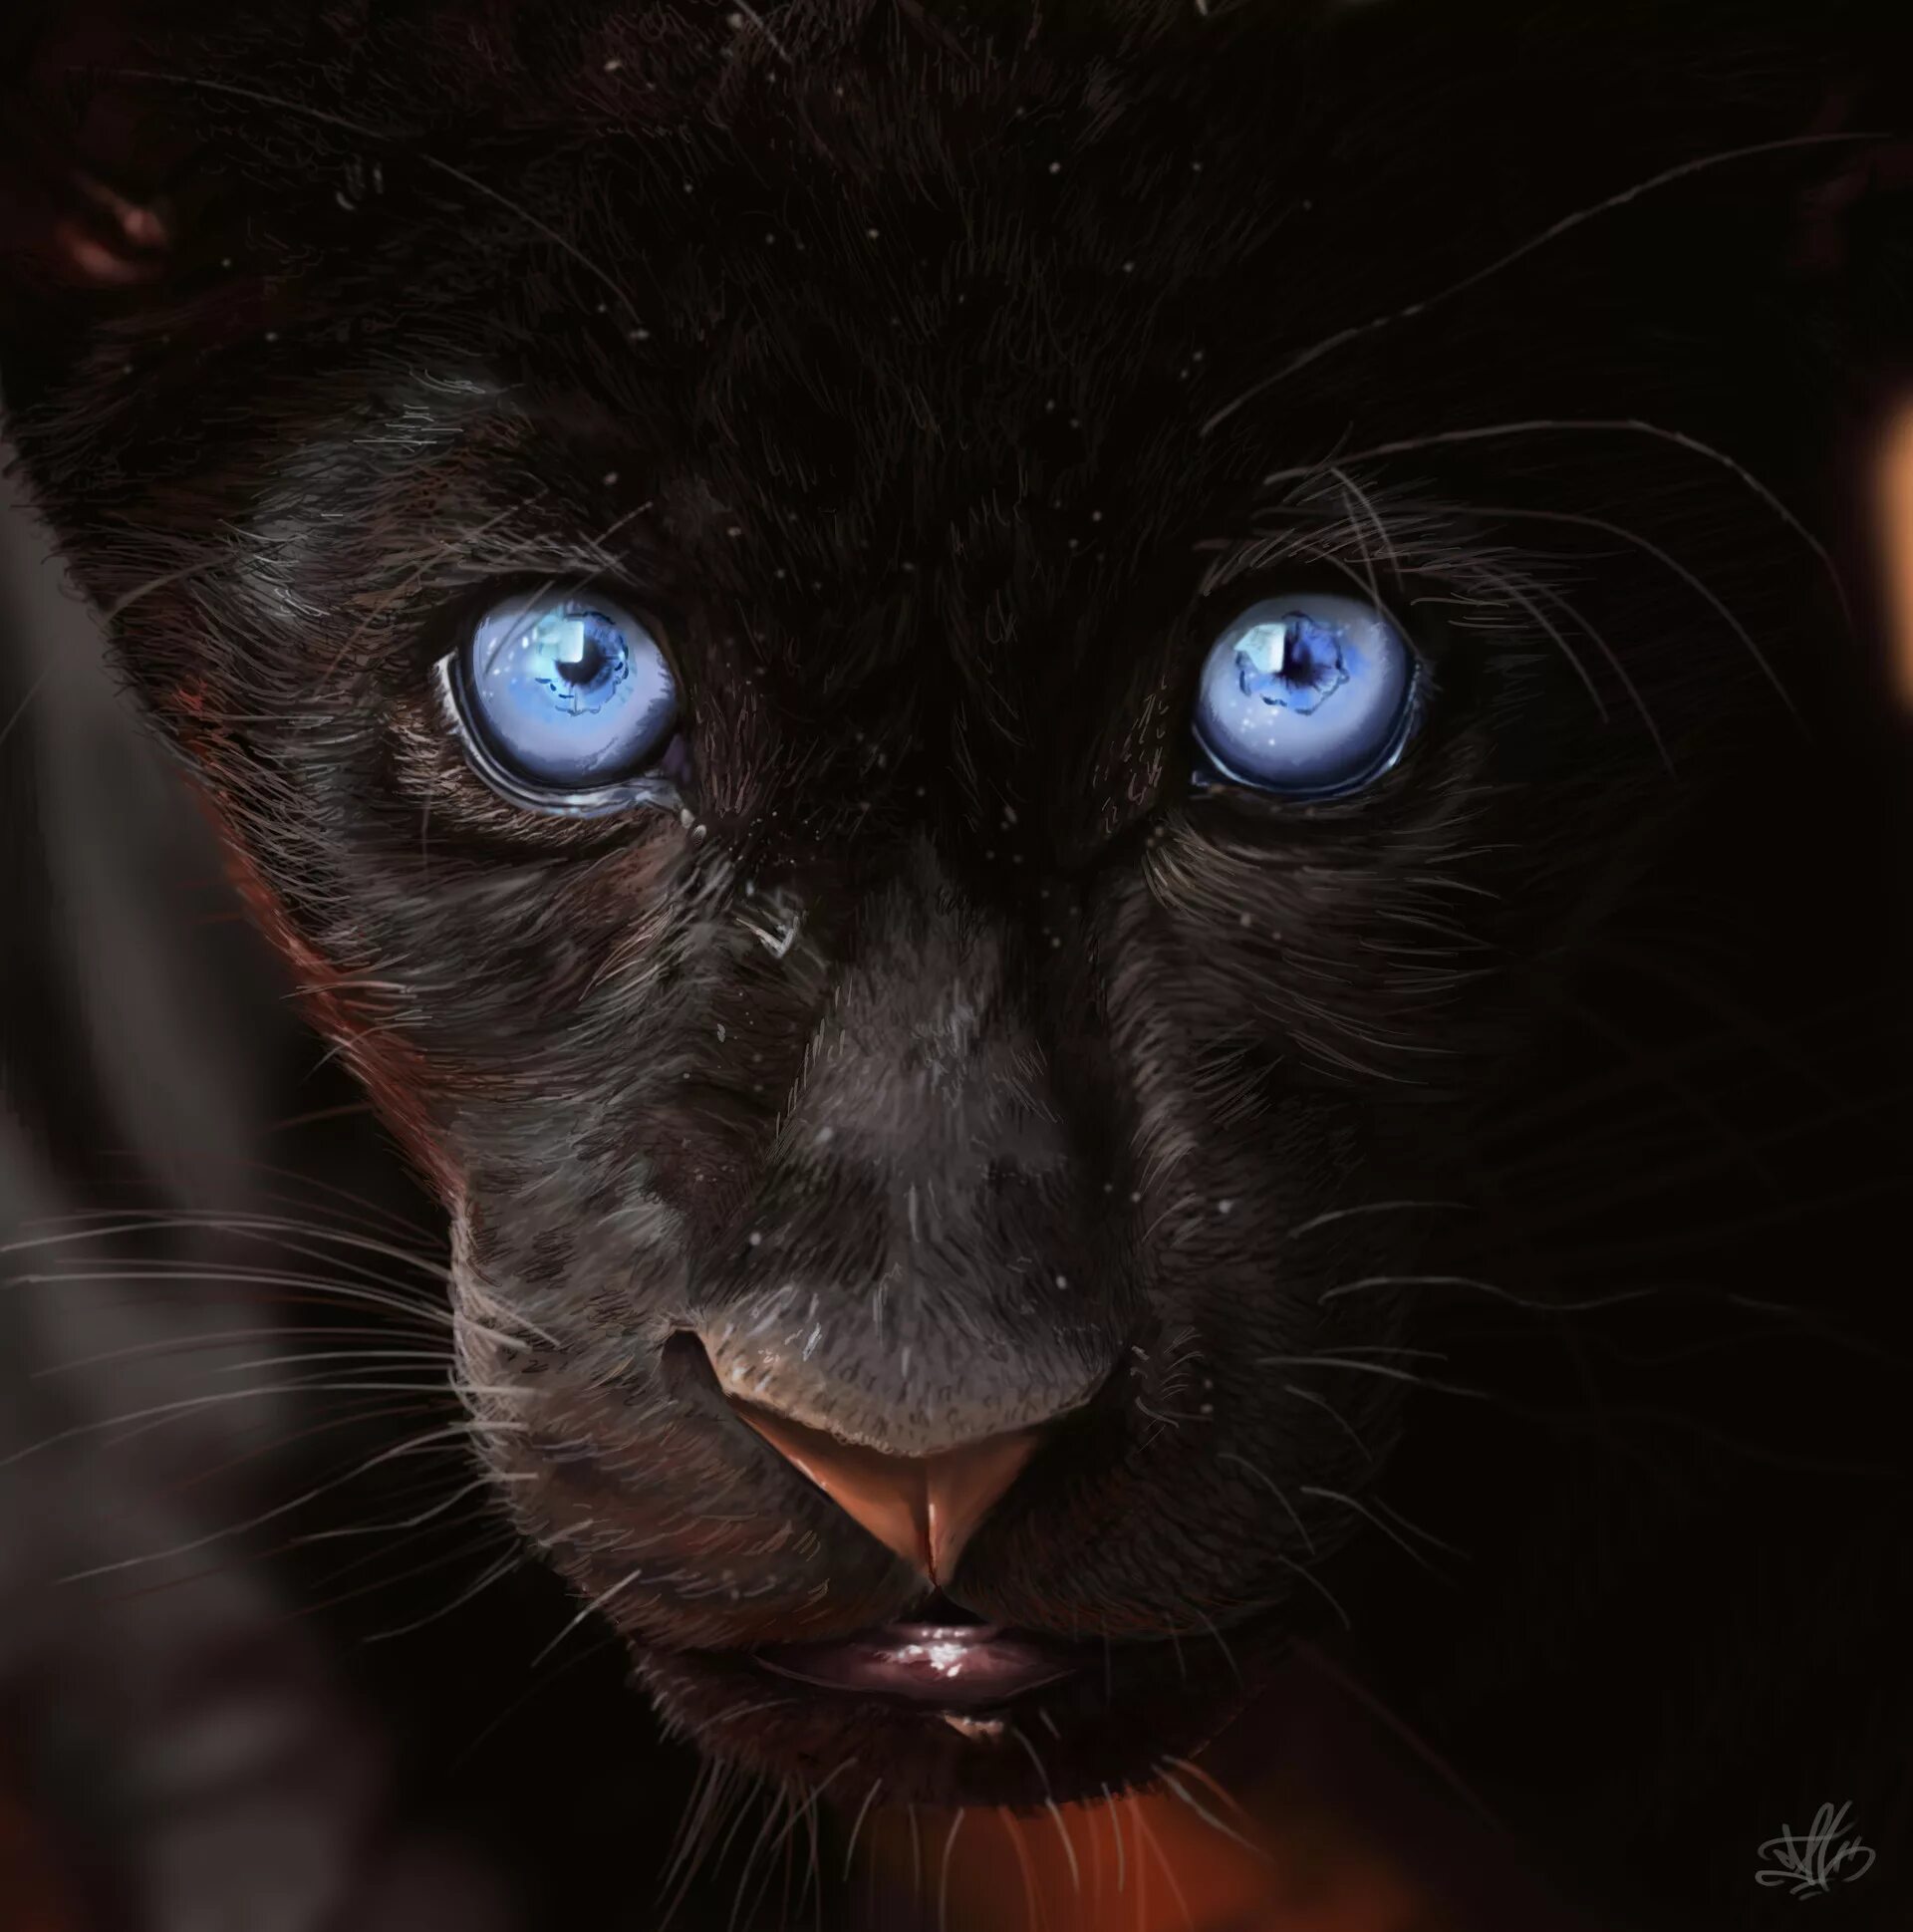 Кошка Пума чёрная пантера с голубыми глазами. Чёрный котёнок с голубыми глазами. Черная Пума с голубыми глазами. Красивый черный кот с голубыми глазами. Черная глазая